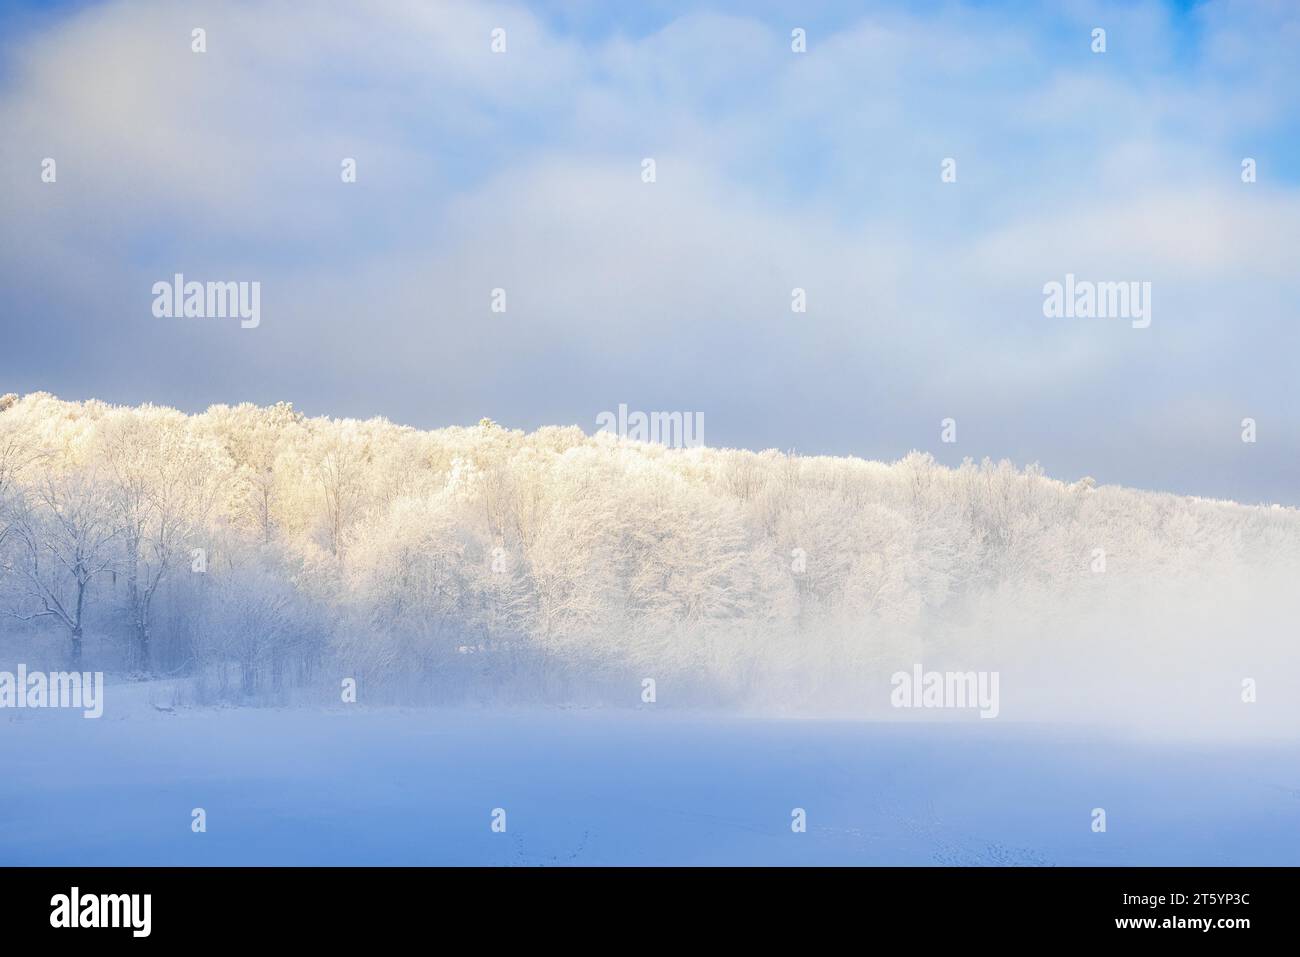 Frostige Bäume im Nebel auf einem Hügel an einem kalten Wintertag Stockfoto